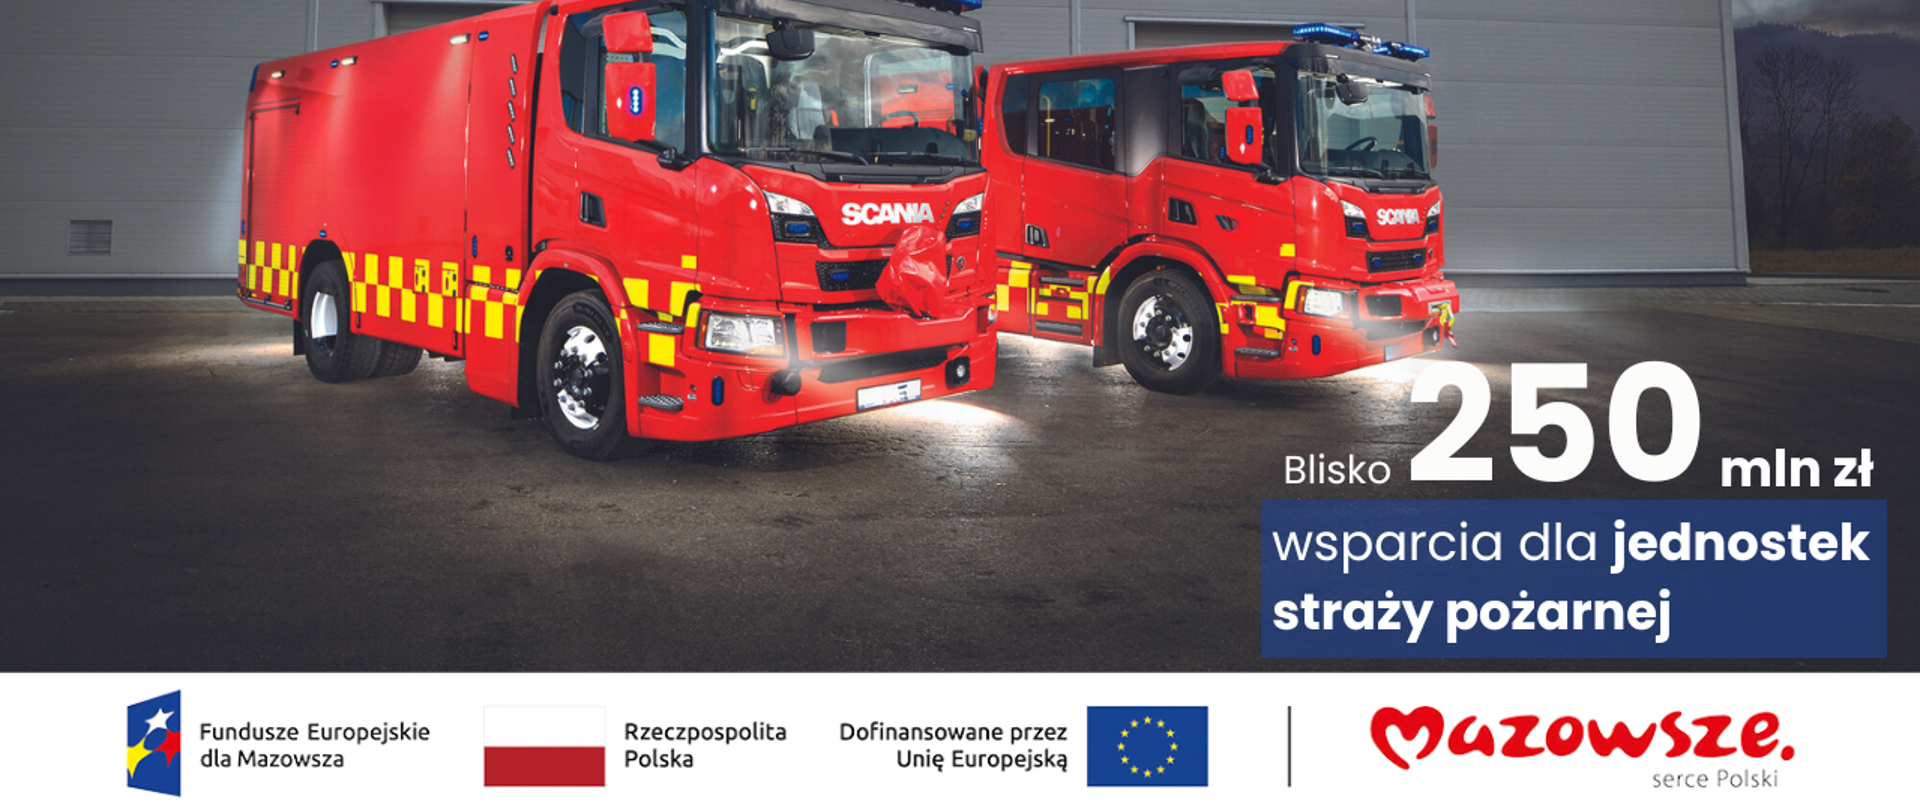 W górnej części zdjęcia dwa wozy strażackie w kolorze czerwonym. U dołu zdjęcia logotypy: Fundusze Europejskie dla Mazowsza, Rzeczpospolita Polska, Dofinansowano przez Unię Europejską i Mazowsze Serce Polski